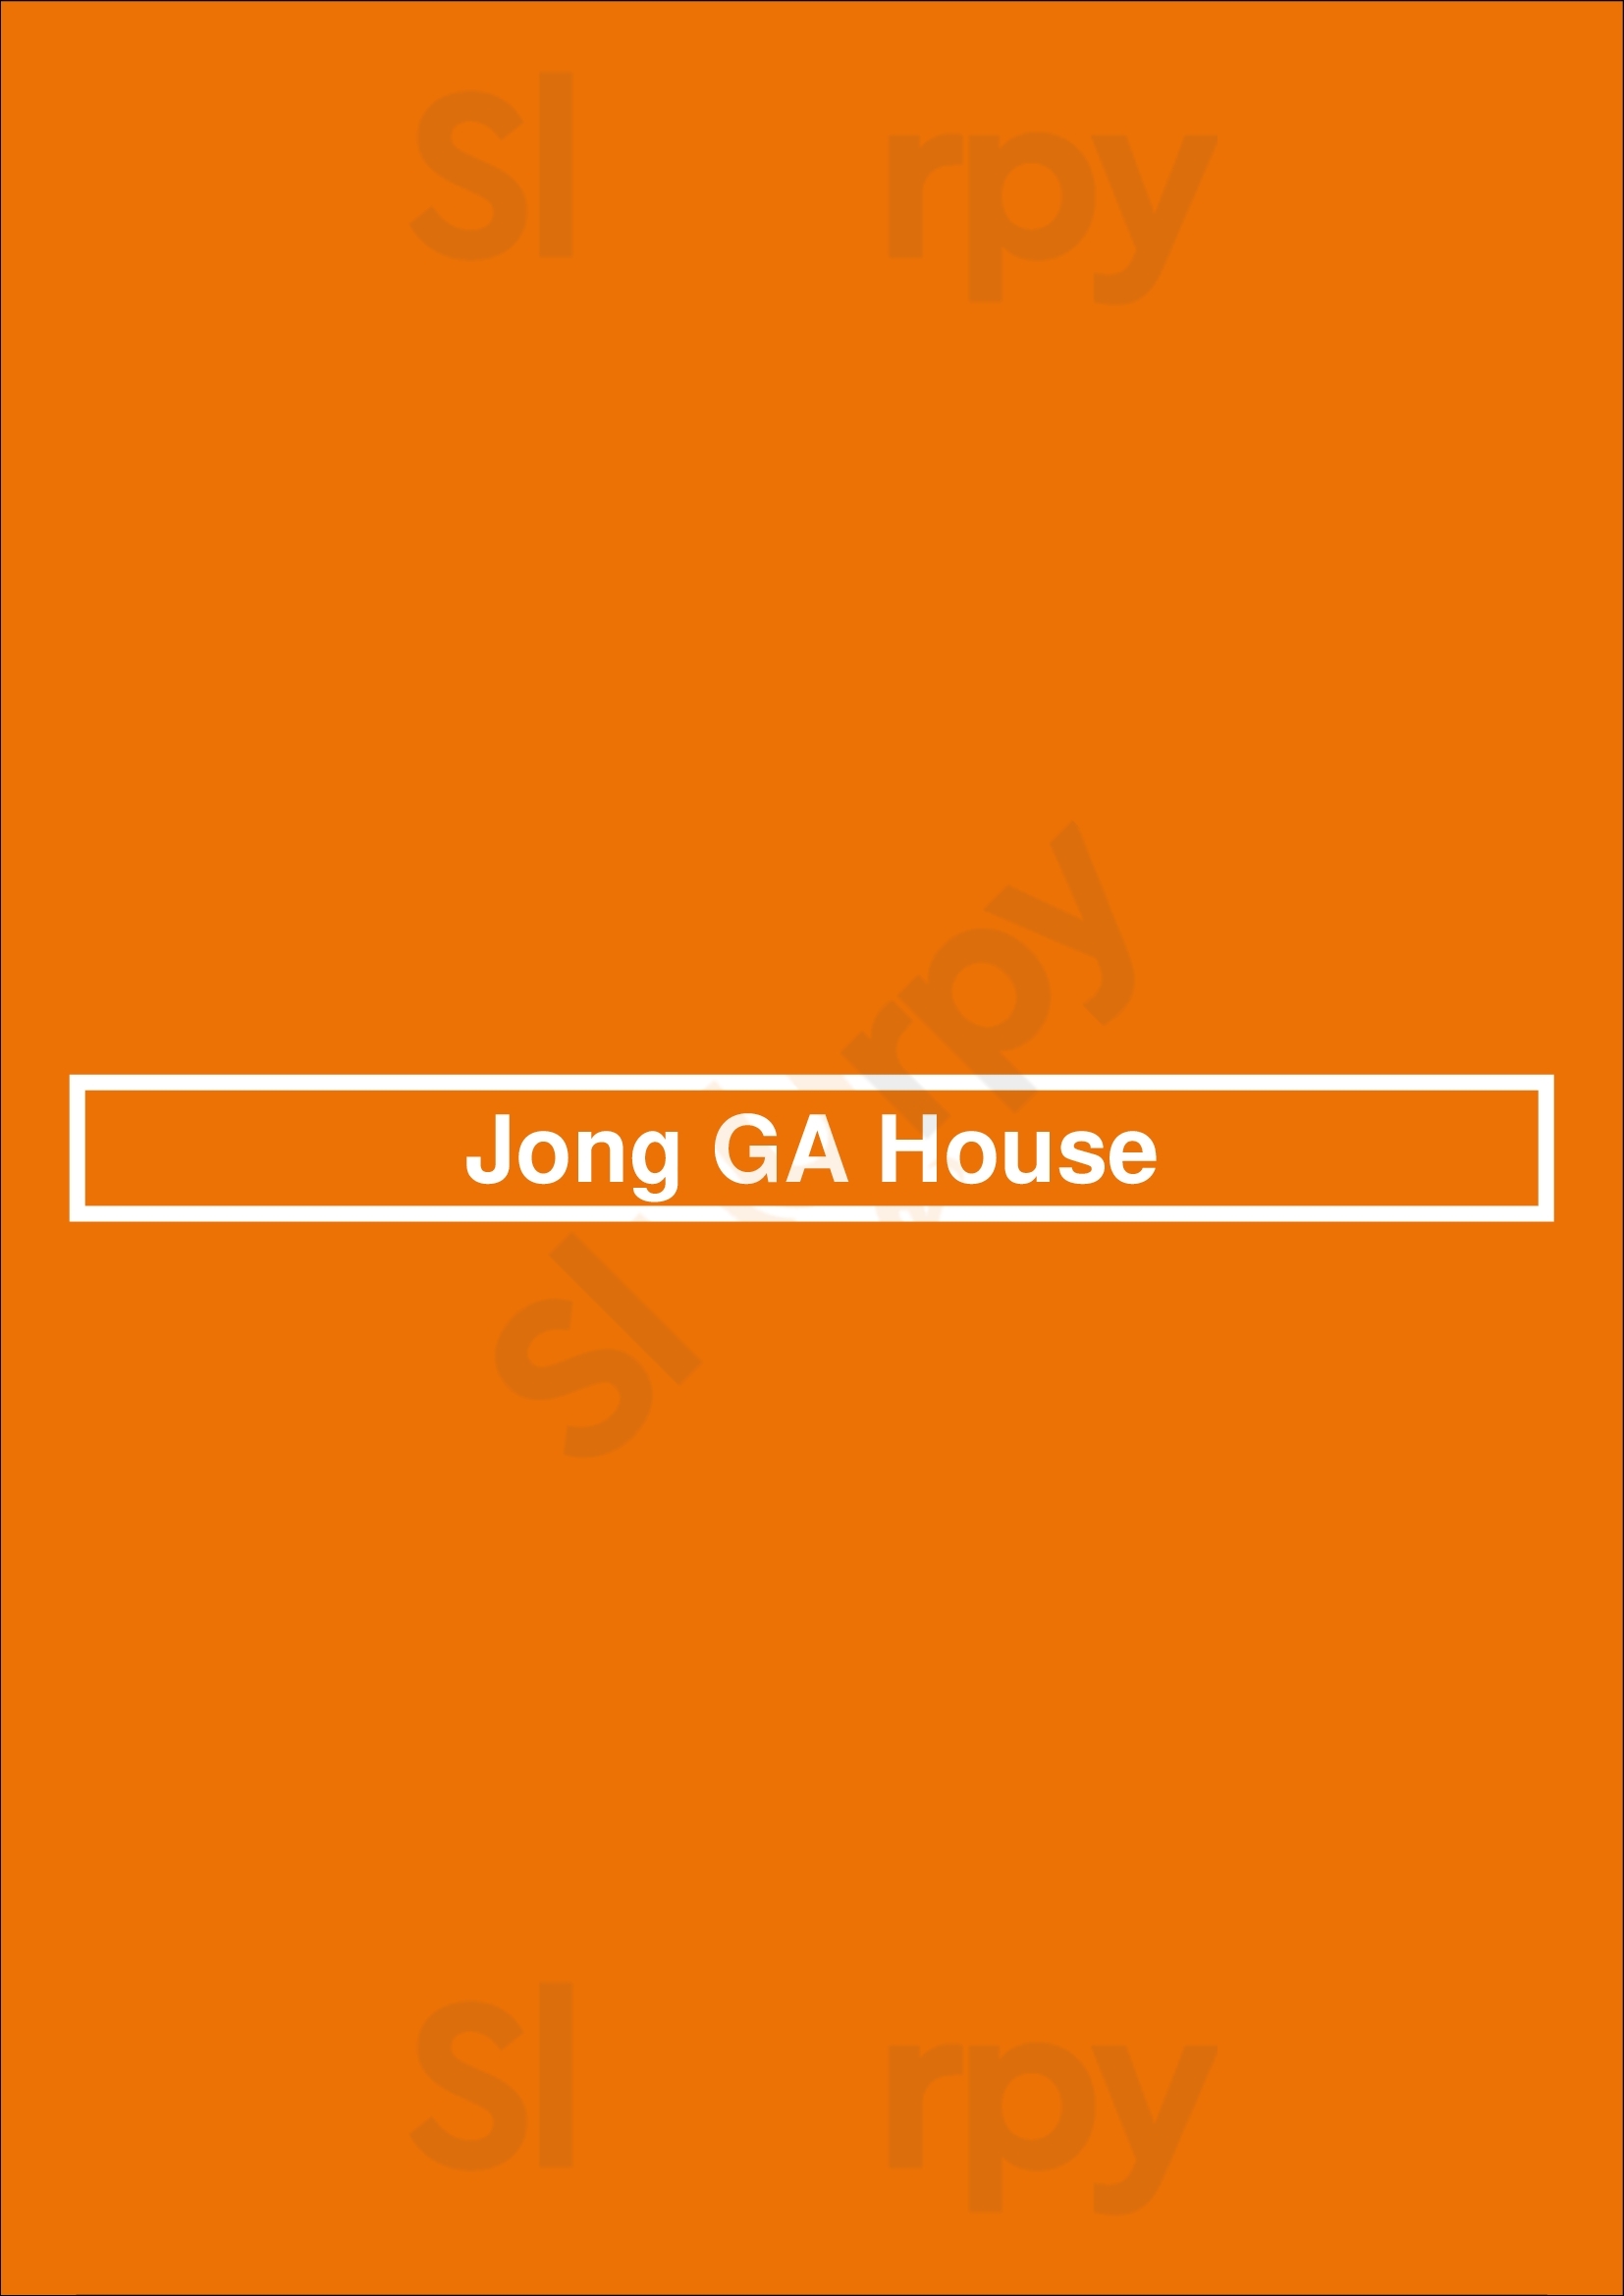 Jong Ga House Oakland Menu - 1